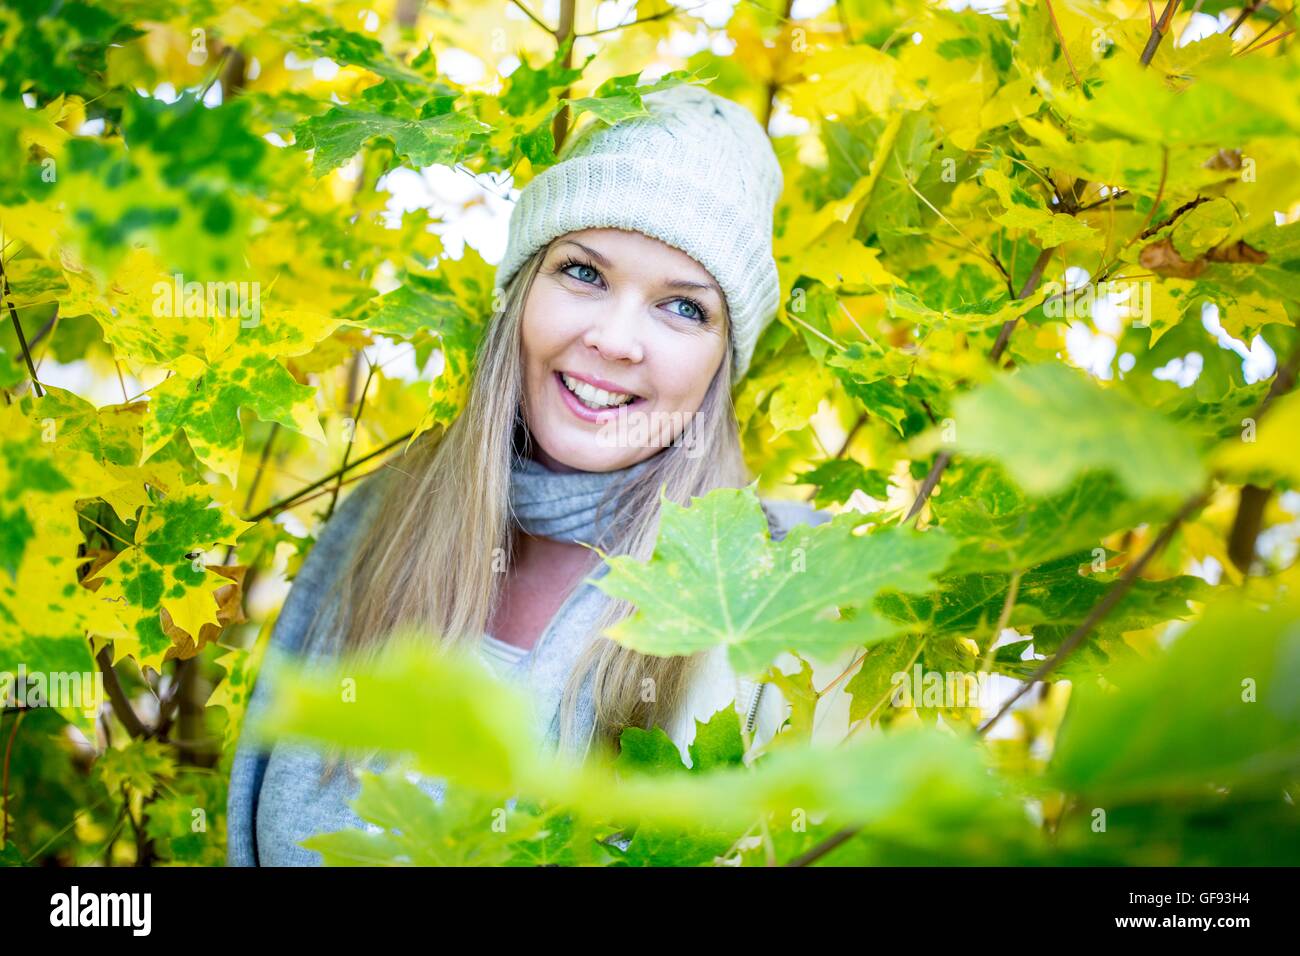 Parution du modèle. Young woman smiling while entouré par les feuilles d'automne. Banque D'Images